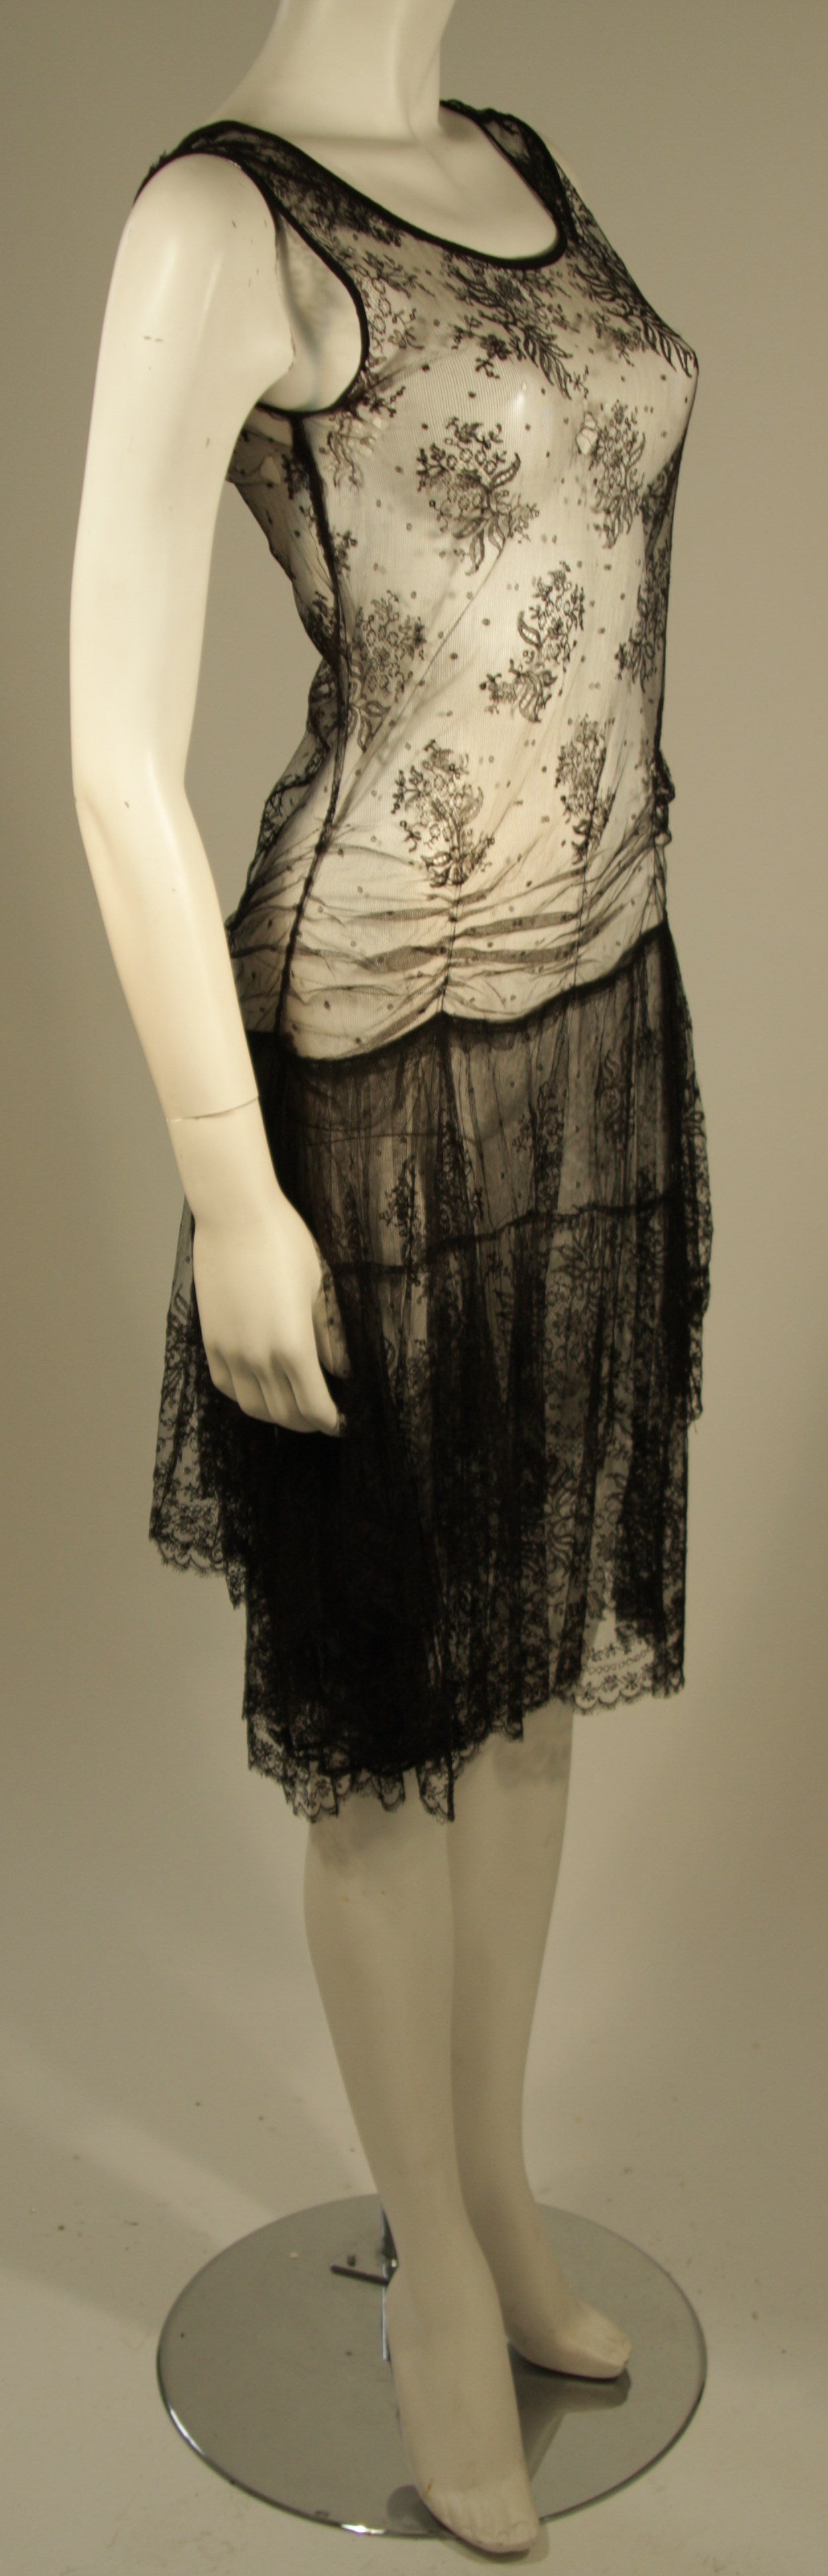 1930s drop waist dress